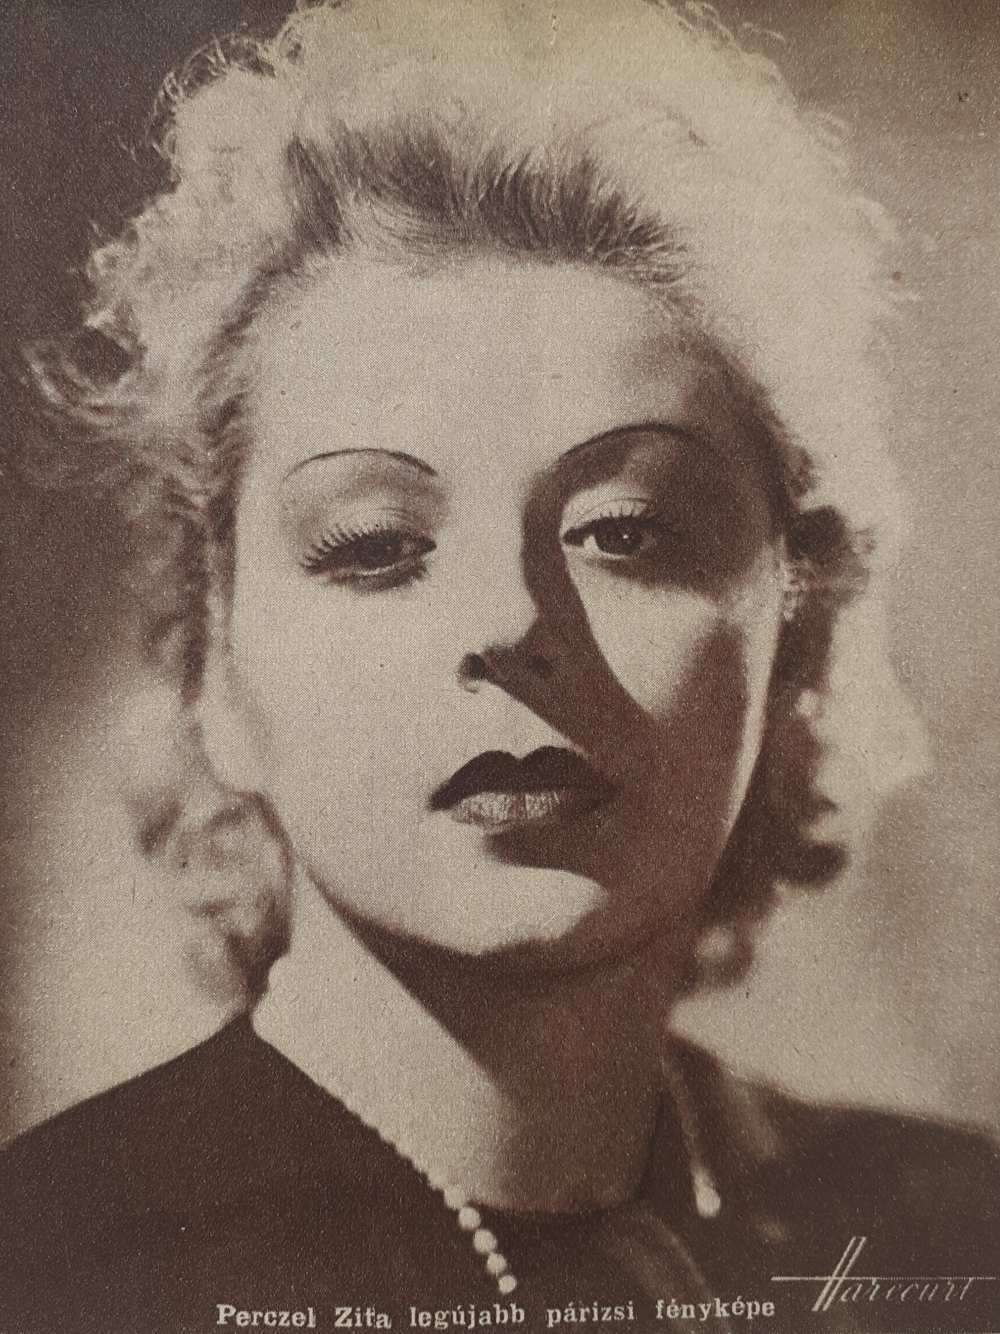 Perczel Zita legújabb párizsi fényképe. Fotó: Harcourt, 1938. In. Színházi Élet, 28. évf., 1938. február 20–26, 9. sz., 13. – Törzsgyűjtemény http://nektar.oszk.hu/hu/manifestation/978572